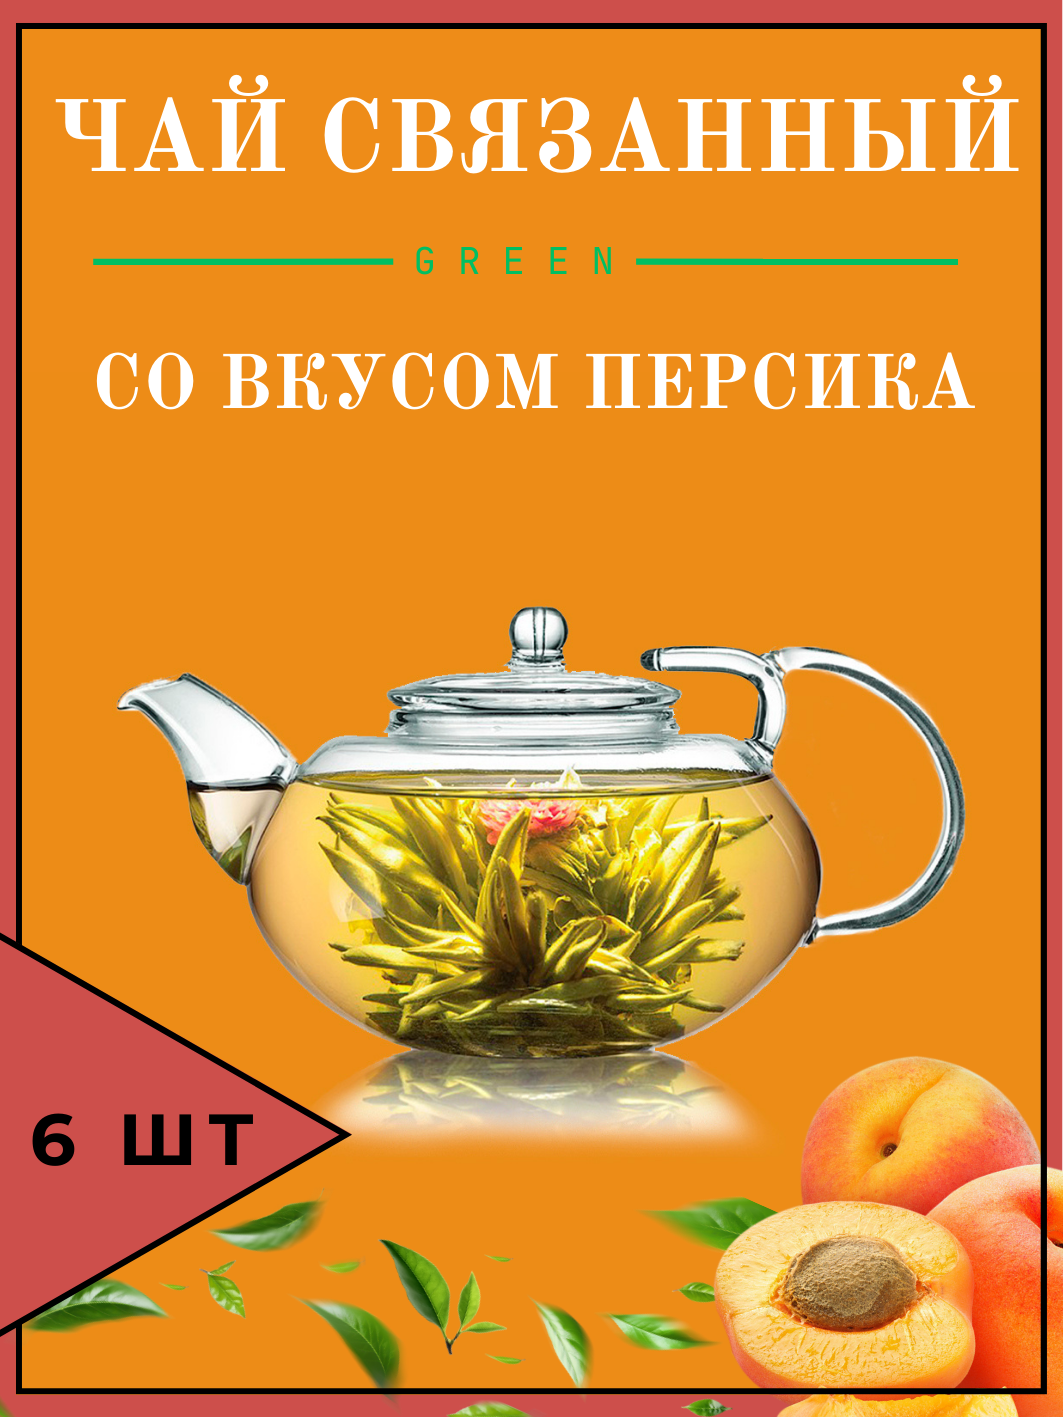 Связанный зеленый чай со вкусом персика (6шт), цветок зеленый распускающийся